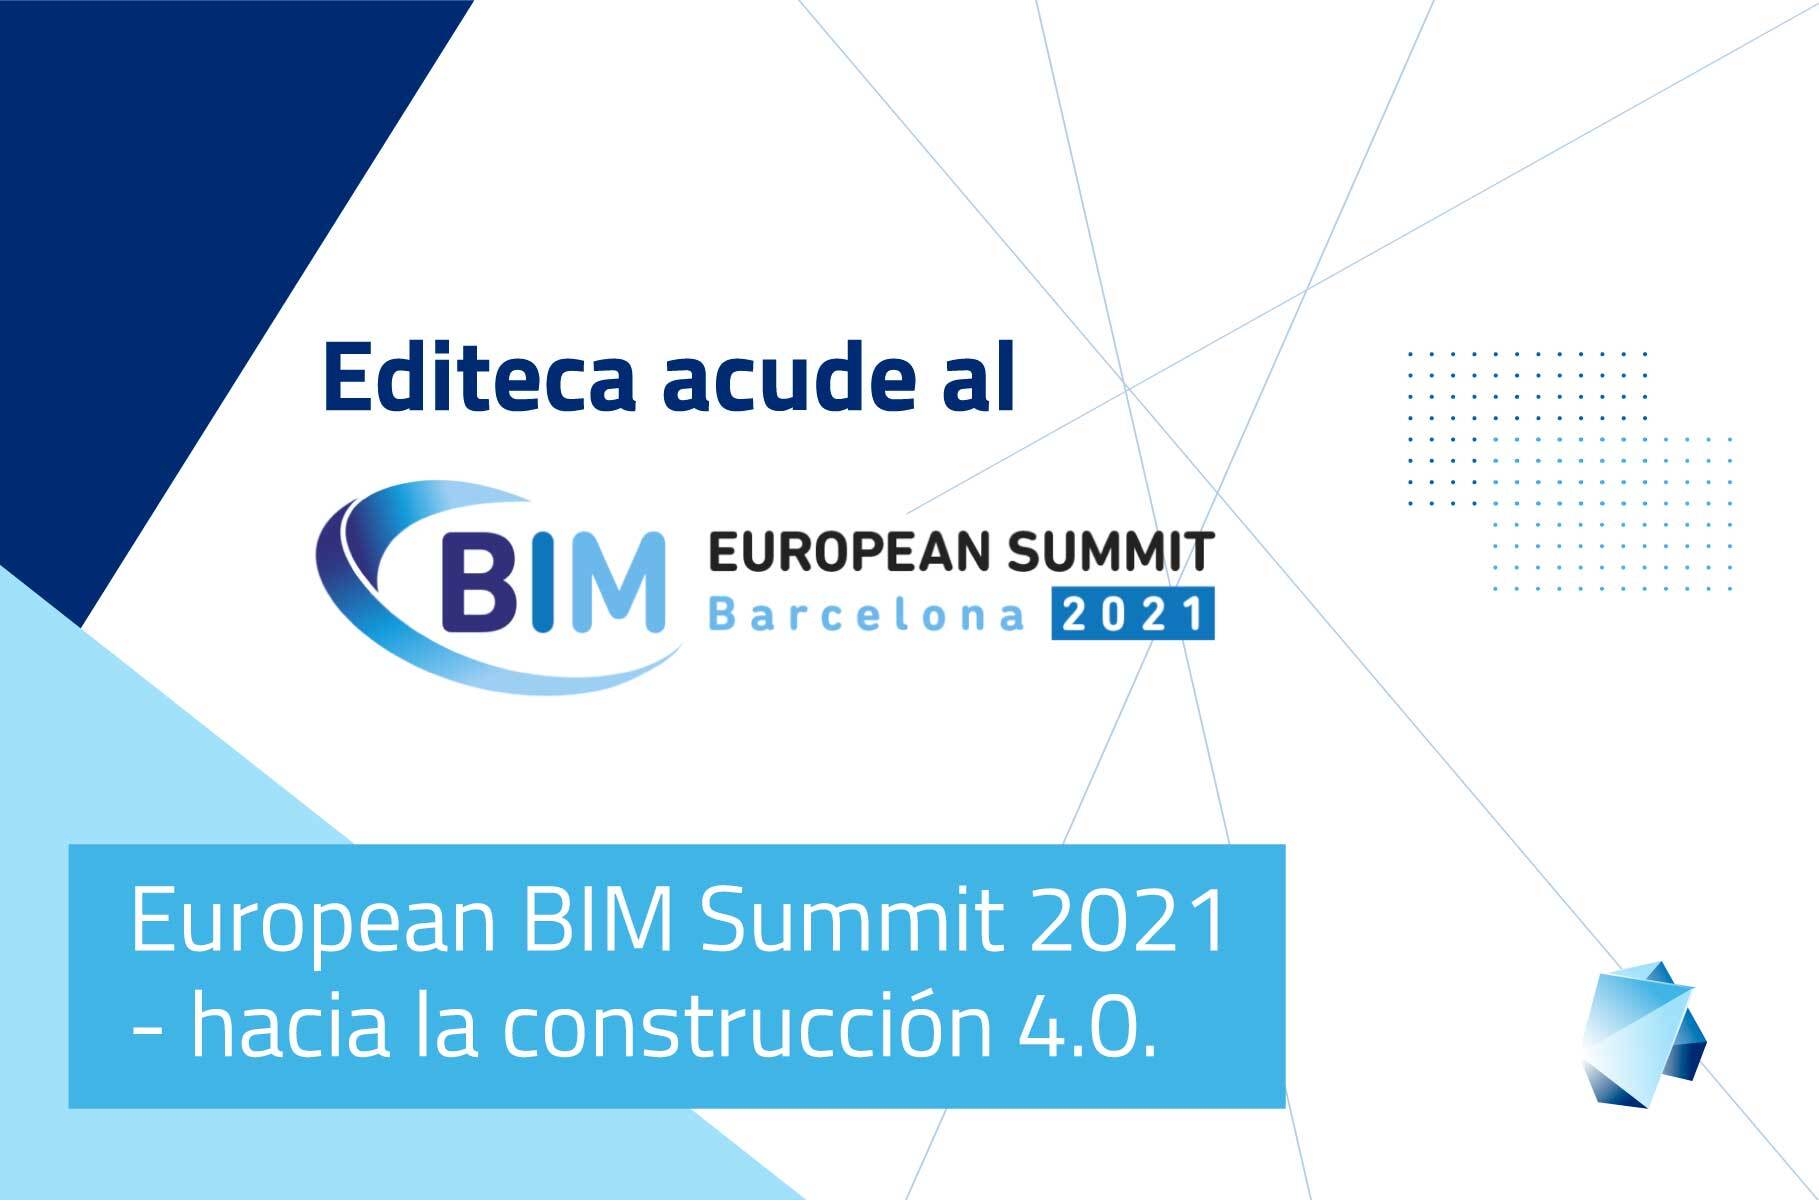 European BIM Summit 2021 | Hacia la construcción 4.0.